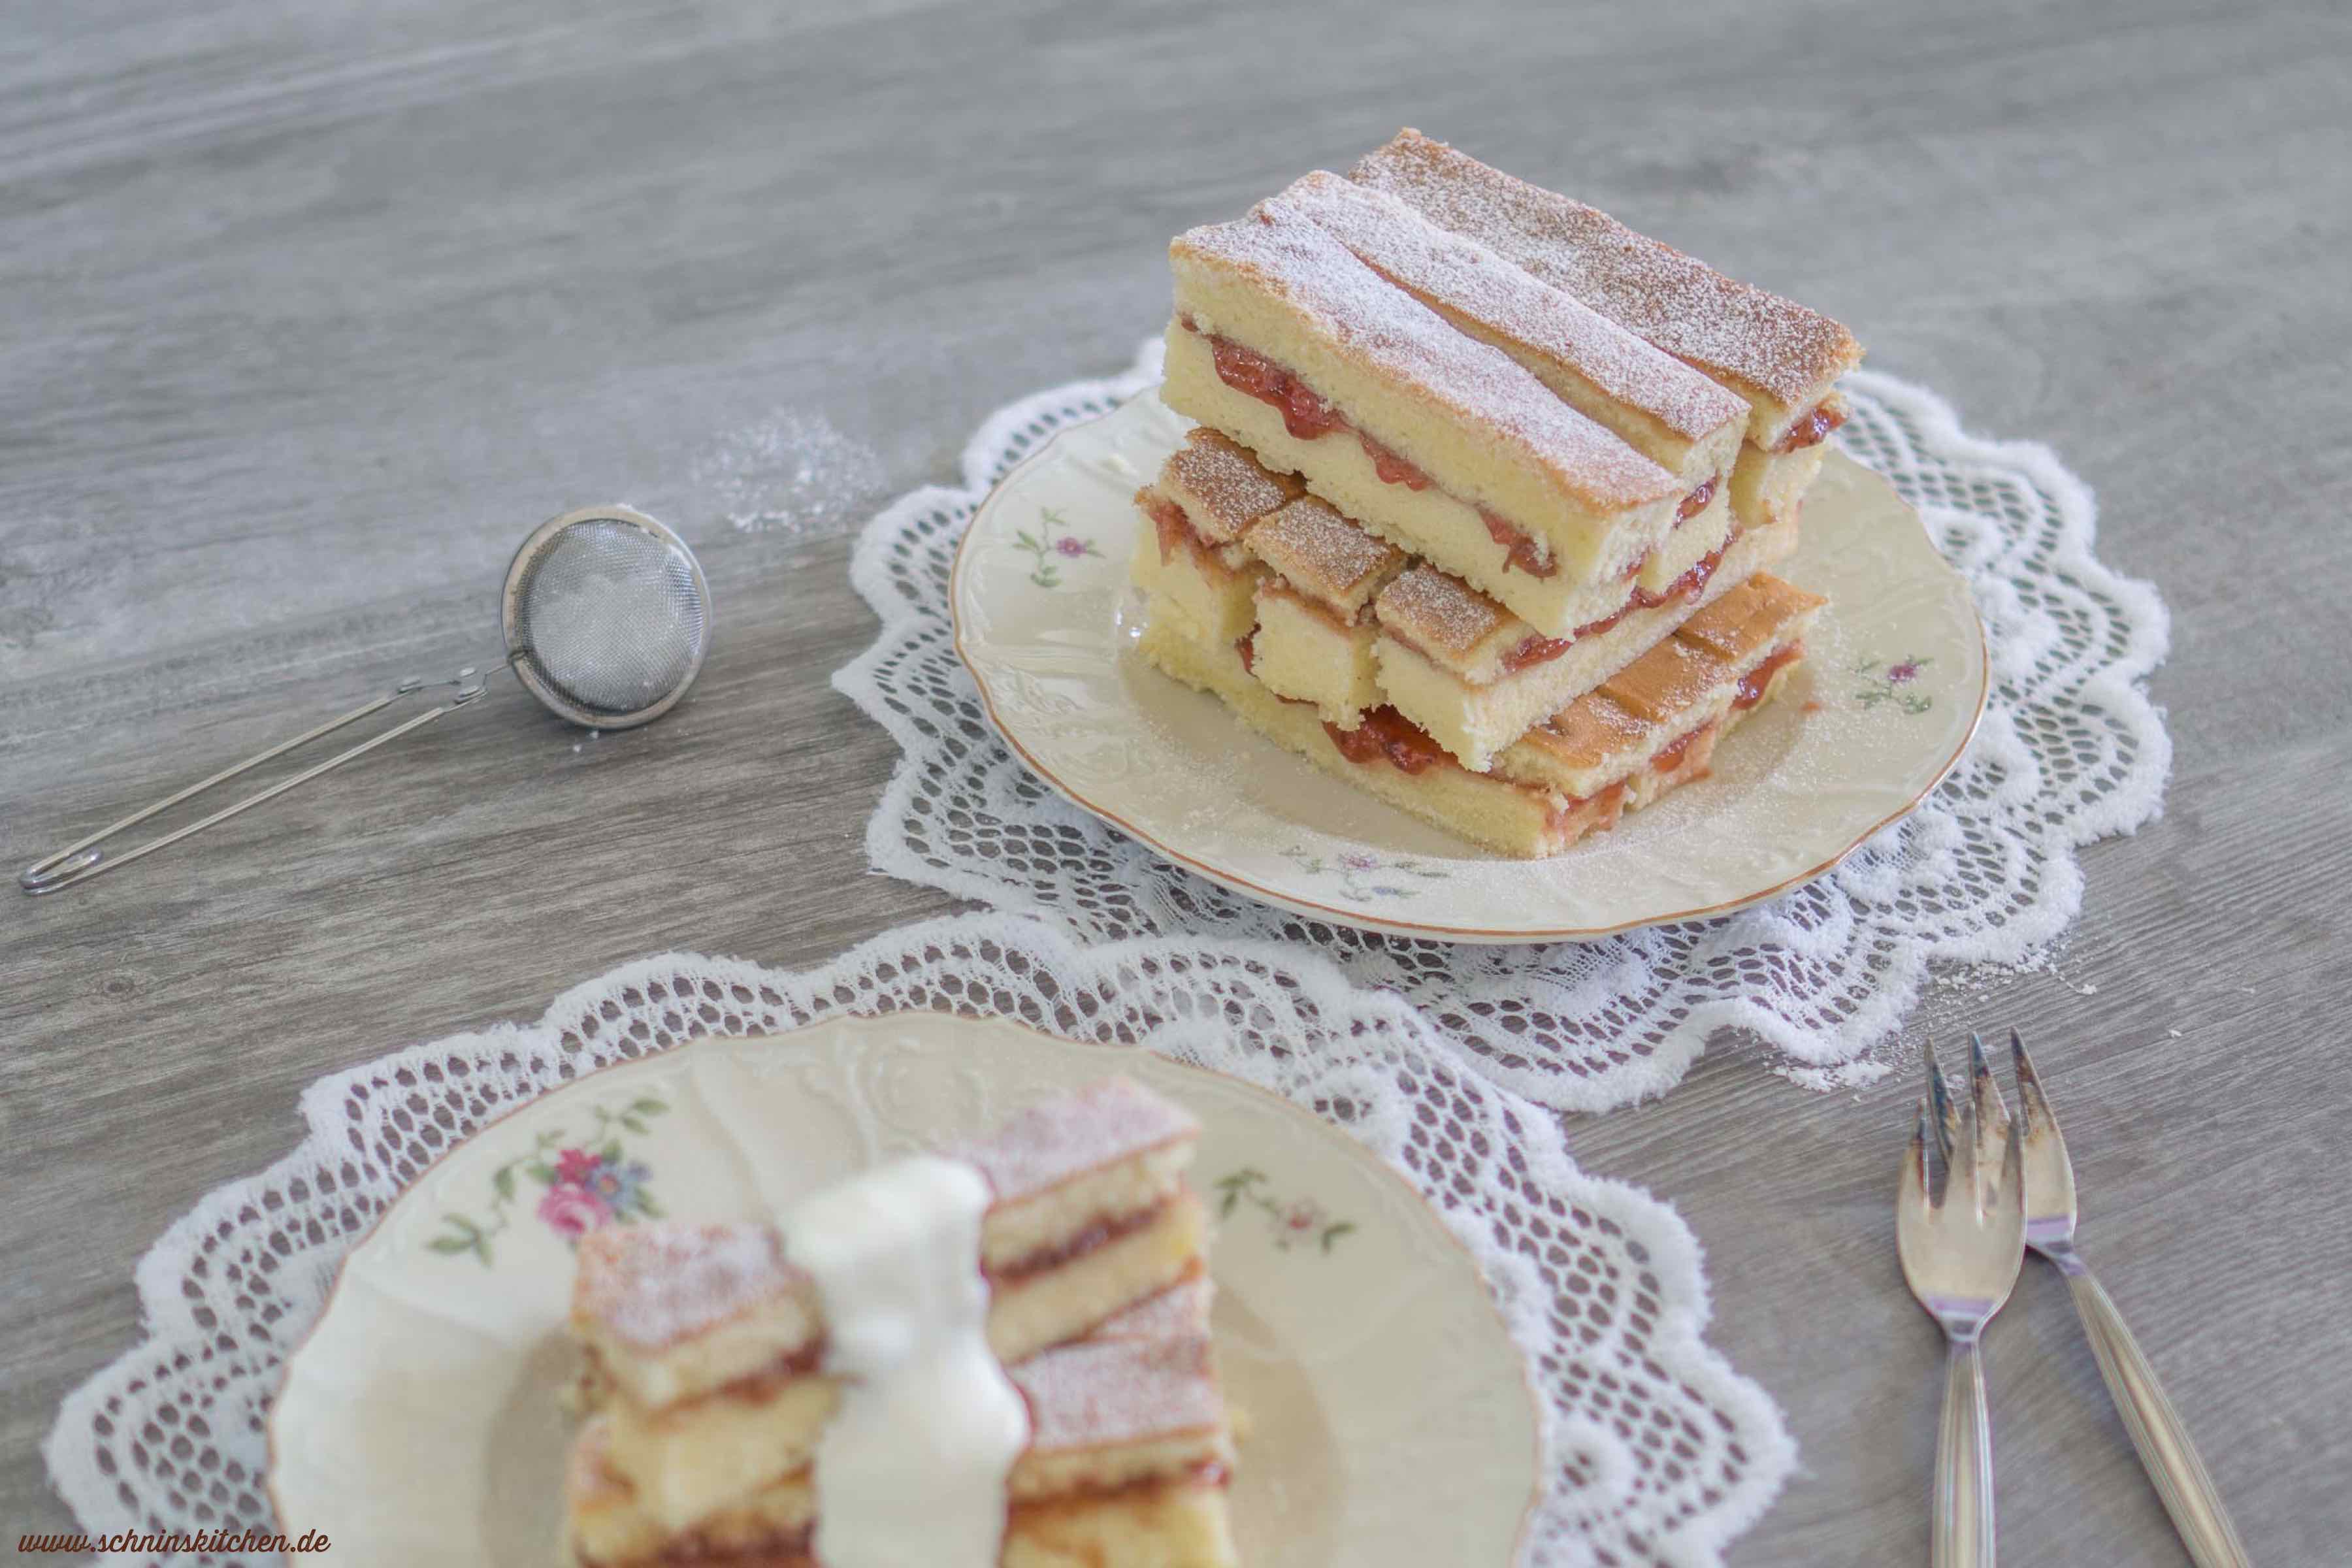 Victoria Sandwiches - Originalrezept aus dem 18. Jahrhundert für Victoria Sponge Cake | www.schninskitchen.de